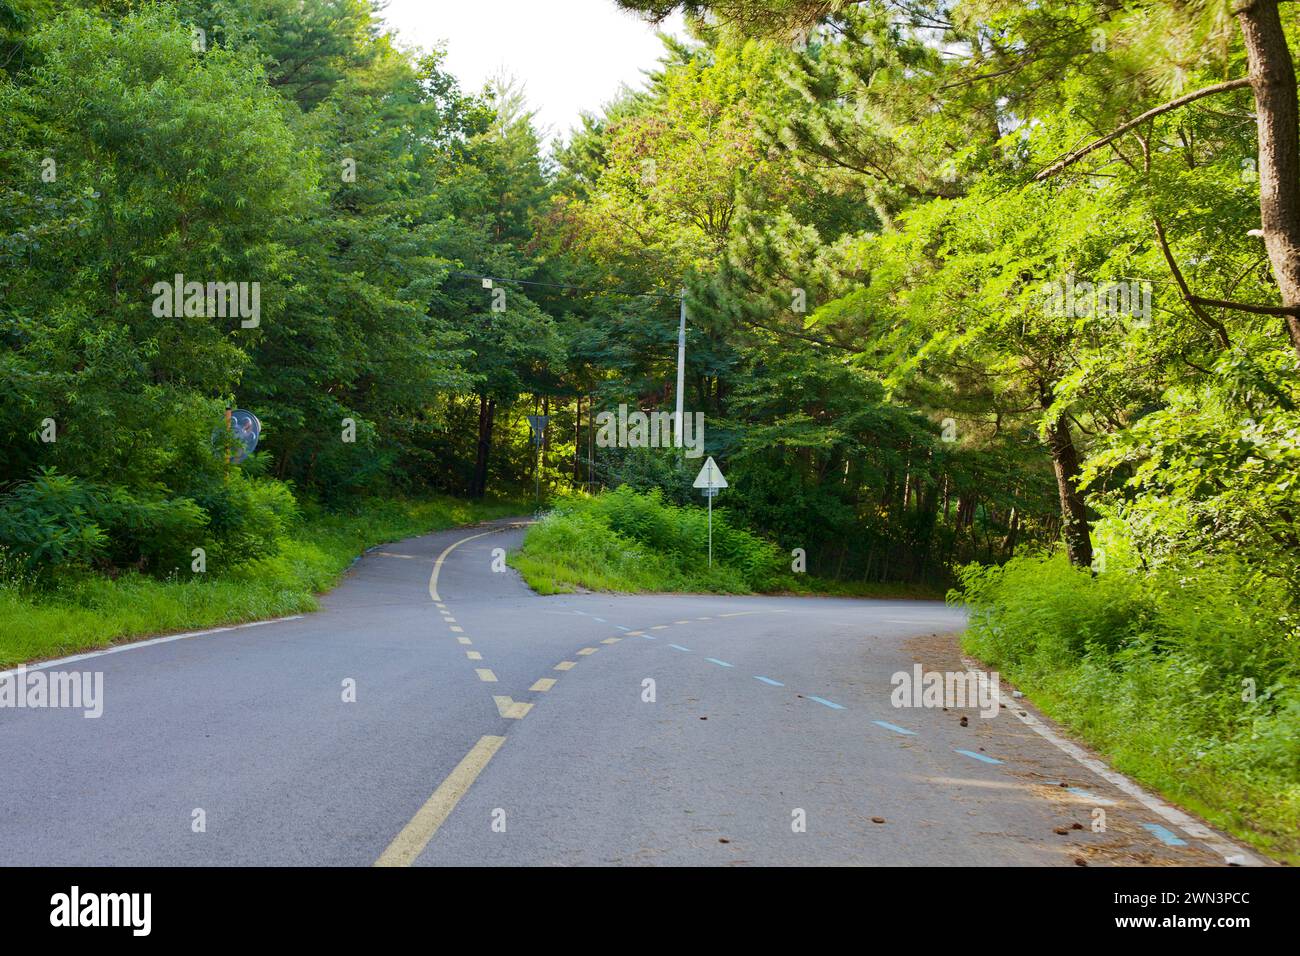 Contea di Yangyang, Corea del Sud - 30 luglio 2019: Vicino al 38th Parallel Pass, due strade divergono sotto il baldacchino di alberi verdi, una per veicoli e t Foto Stock